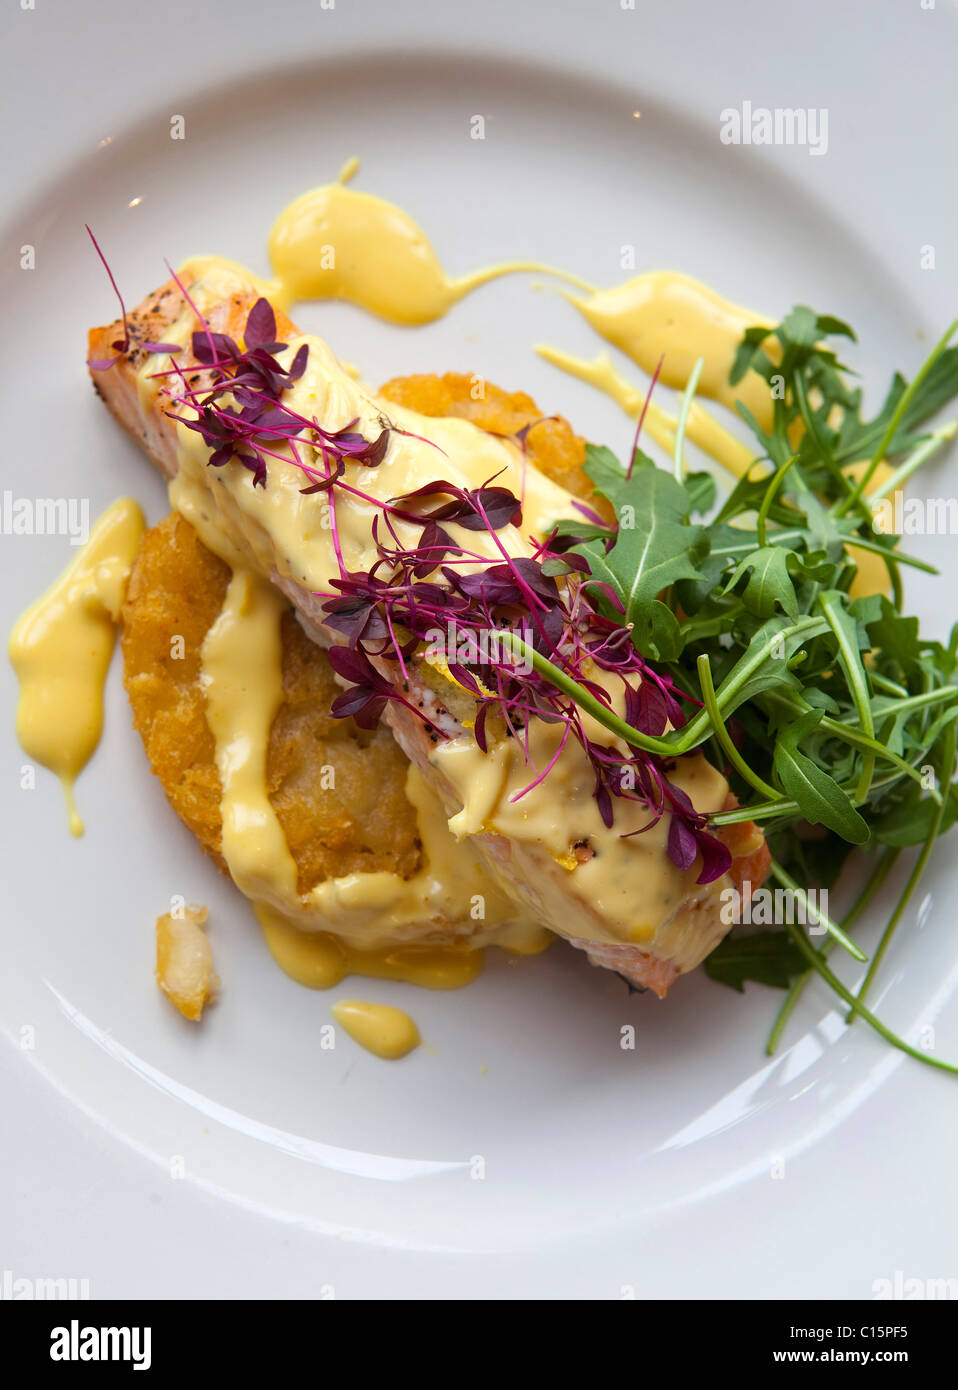 Hauptgang Filet vom Lachs Ofen gebacken gekrönt mit Zitrus-Kruste auf eine  Kartoffel Rösti & "Sauce Hollandaise" 116399 Food serviert Stockfotografie  - Alamy